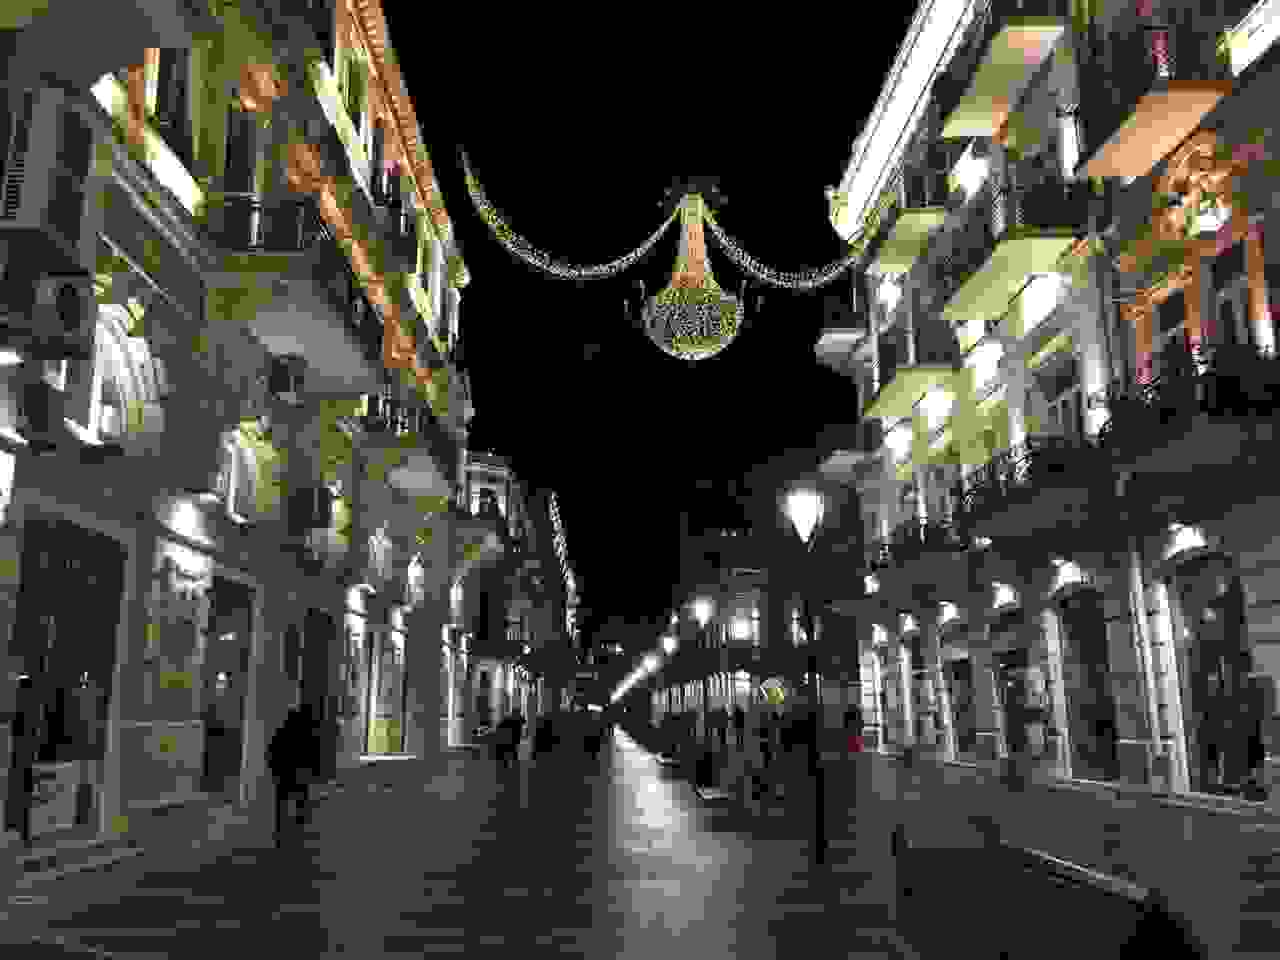 Baku streets at night